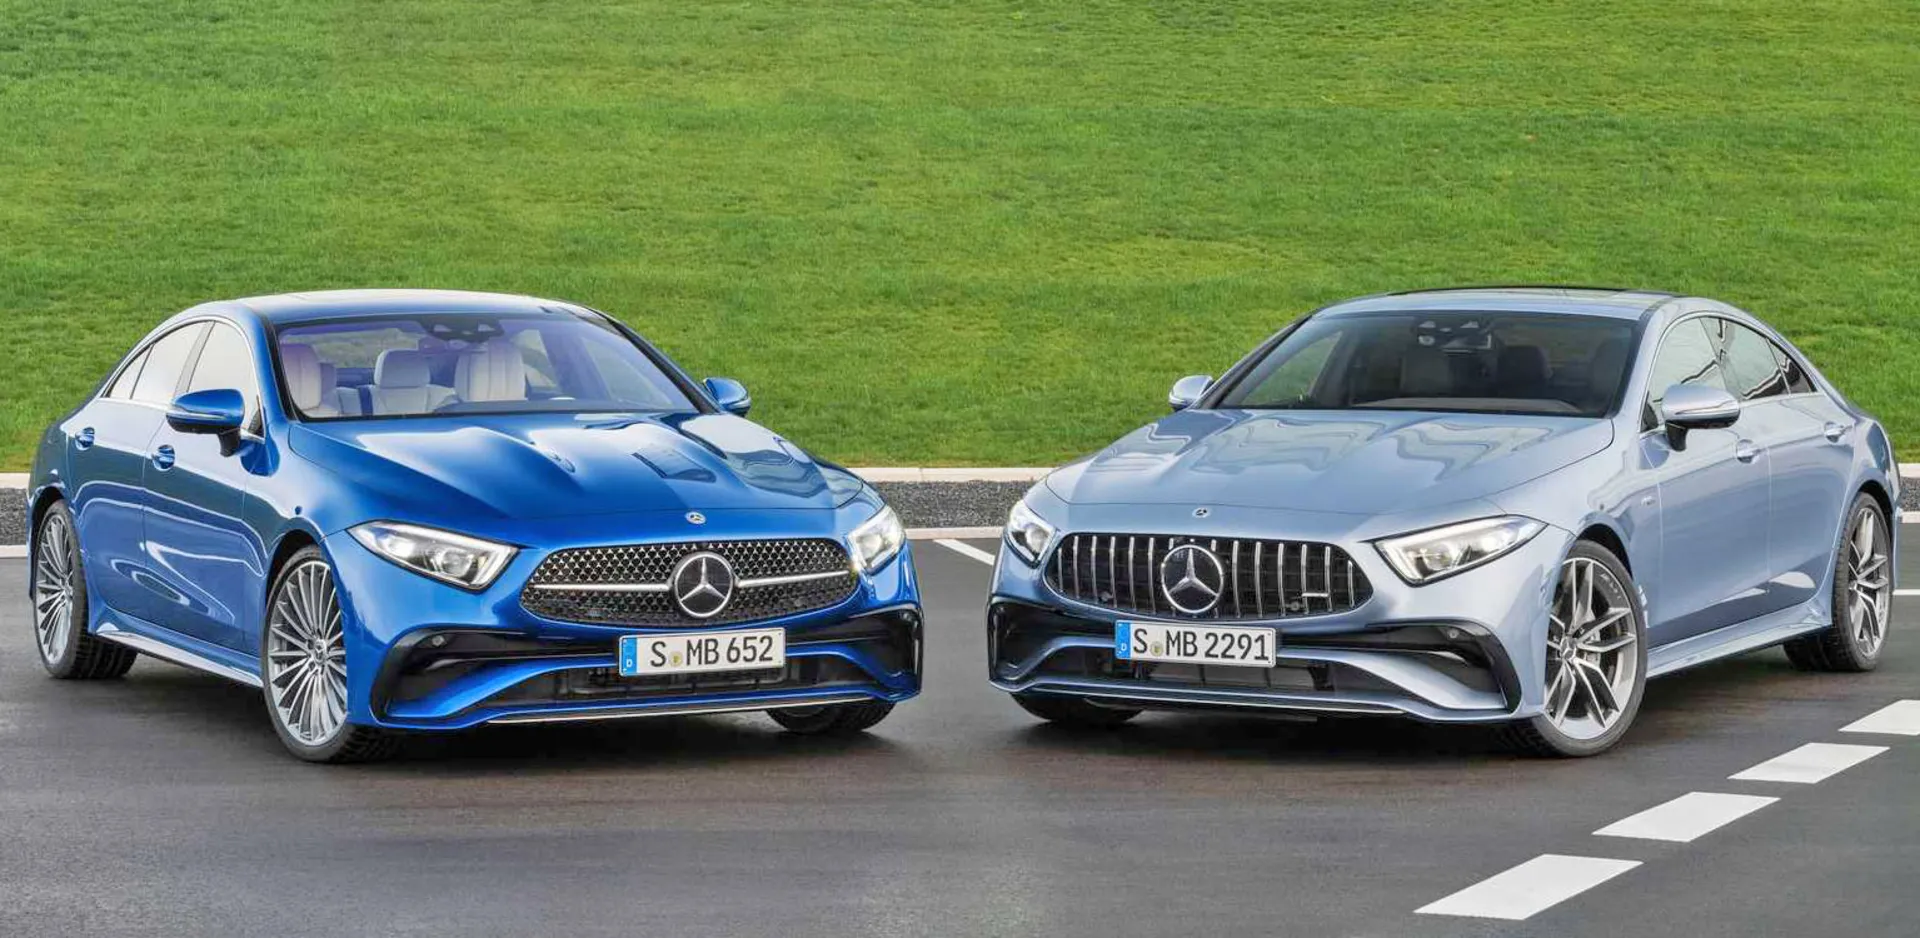 مرجع متخصصين ايران   Mercedes-Benz CLS AMG مرسدس بنز سي ال اس 2022